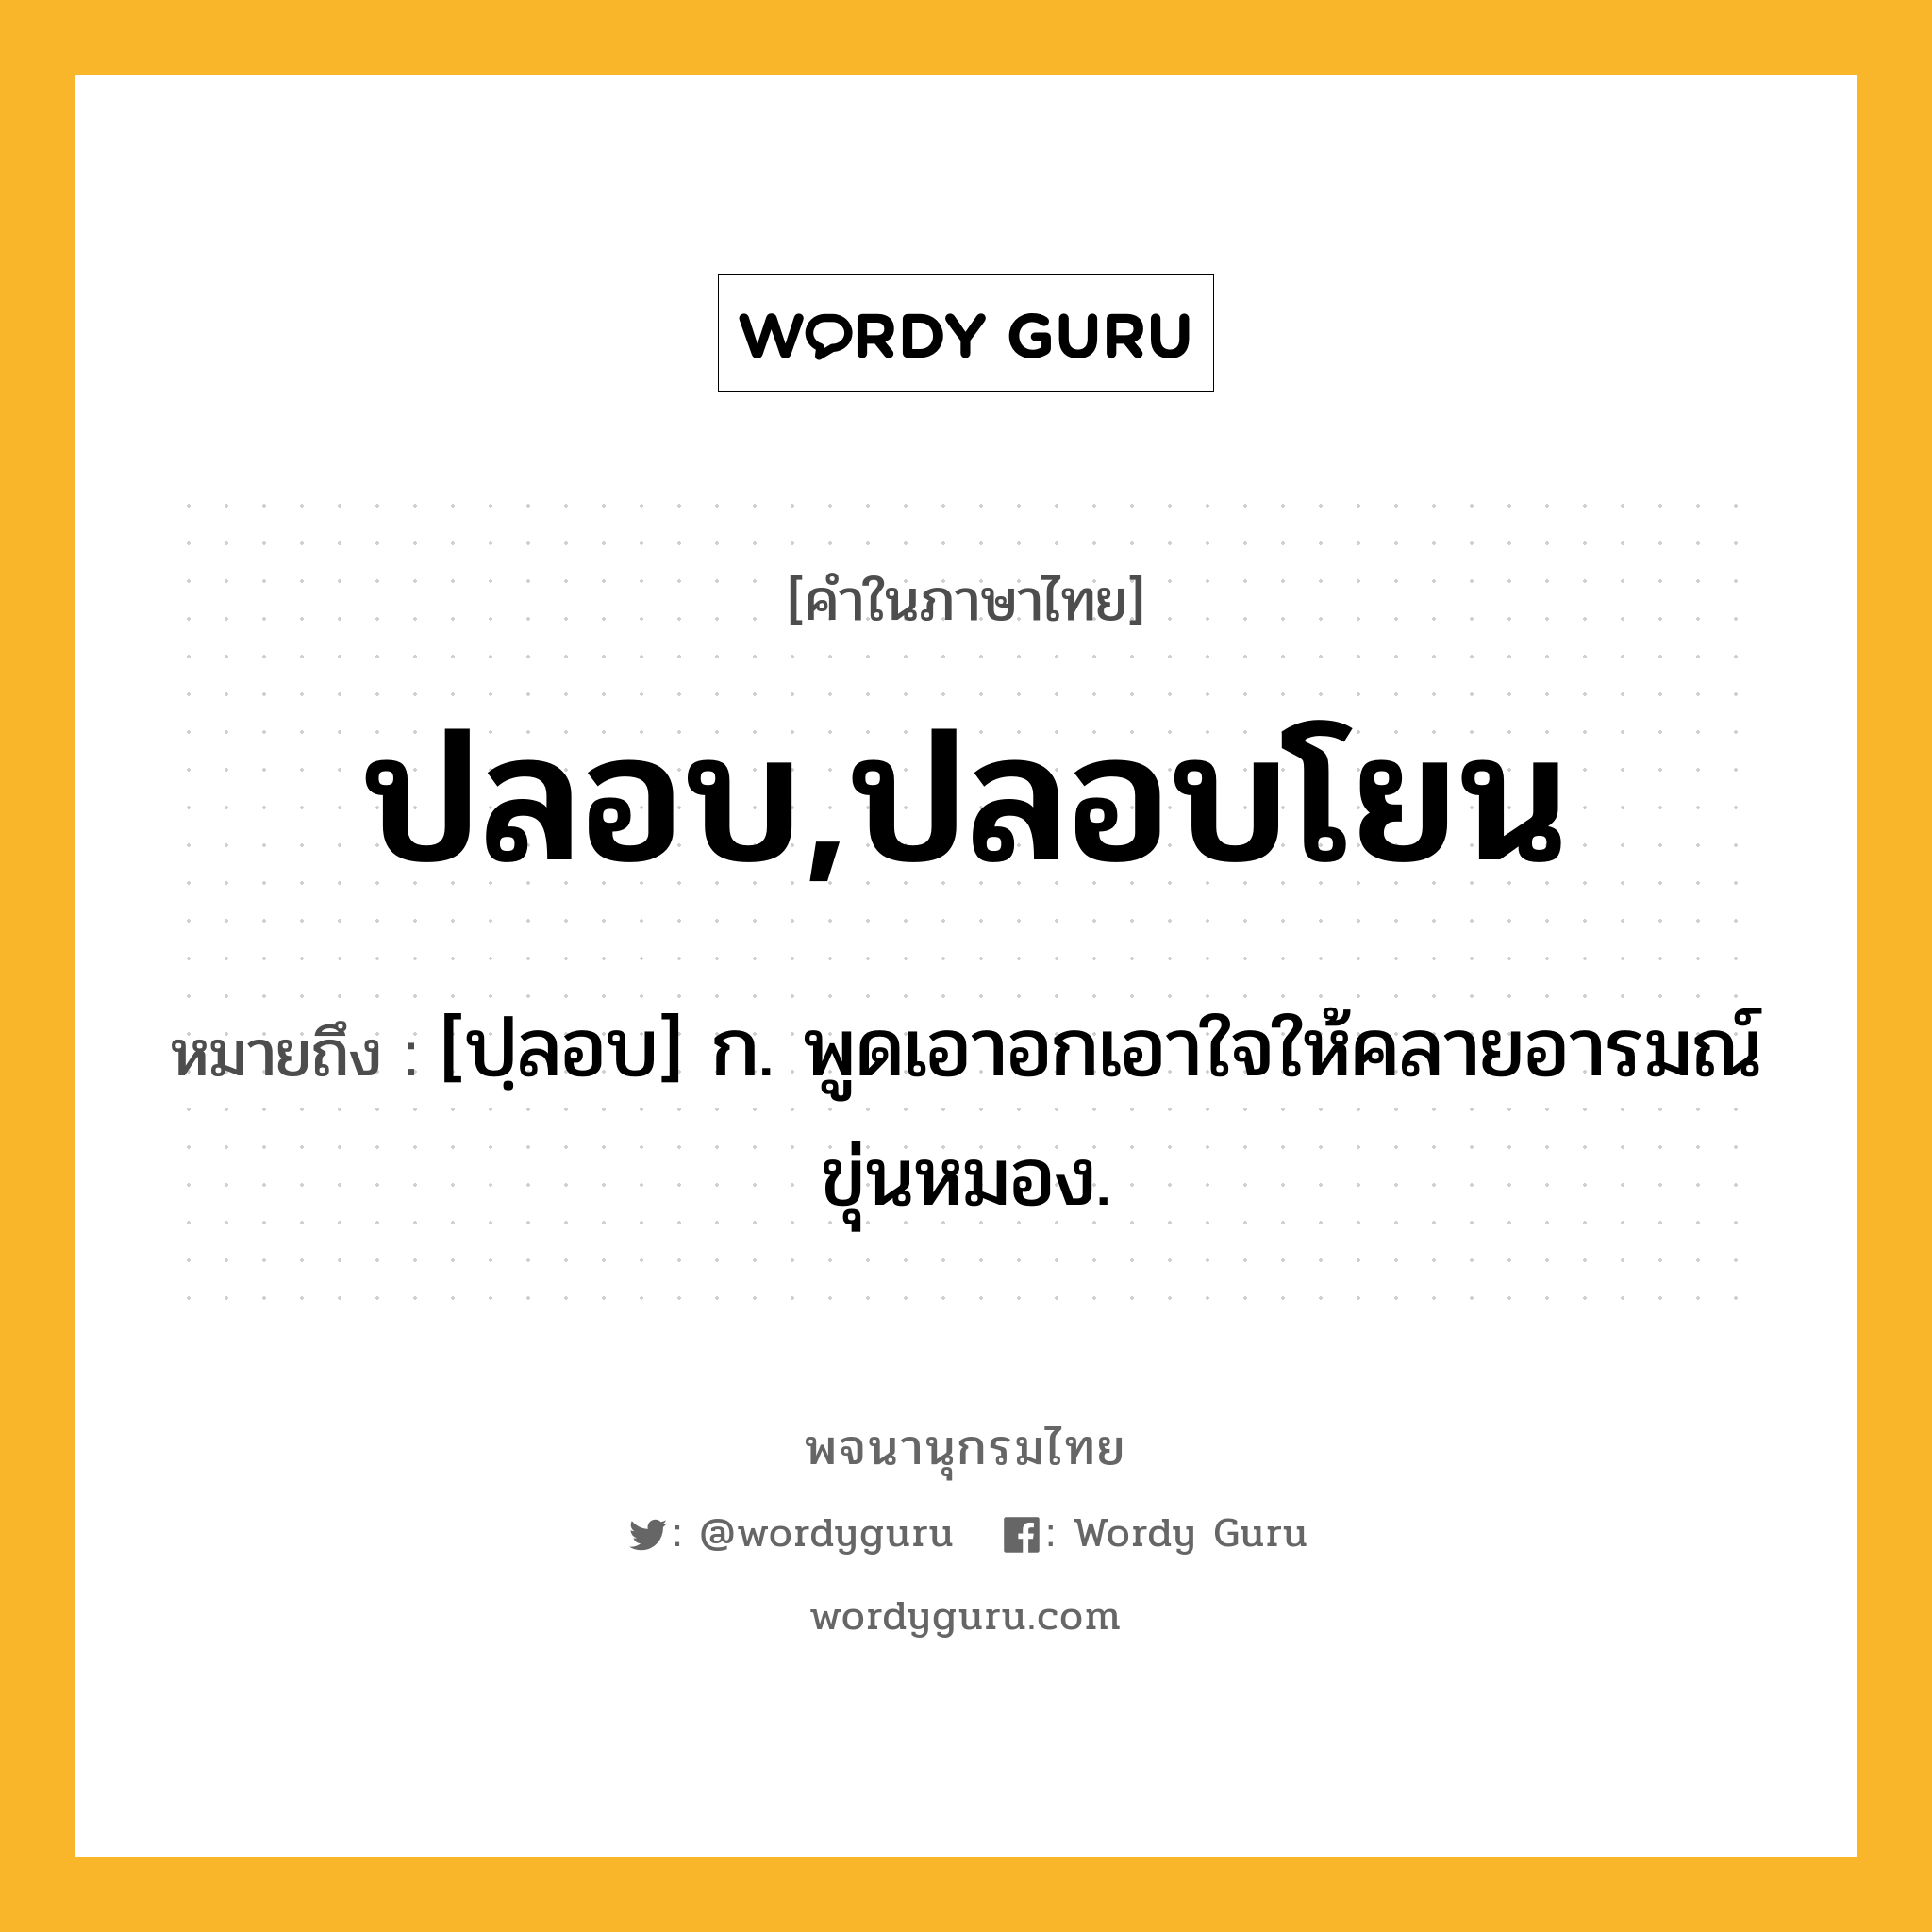 ปลอบ,ปลอบโยน หมายถึงอะไร?, คำในภาษาไทย ปลอบ,ปลอบโยน หมายถึง [ปฺลอบ] ก. พูดเอาอกเอาใจให้คลายอารมณ์ขุ่นหมอง.